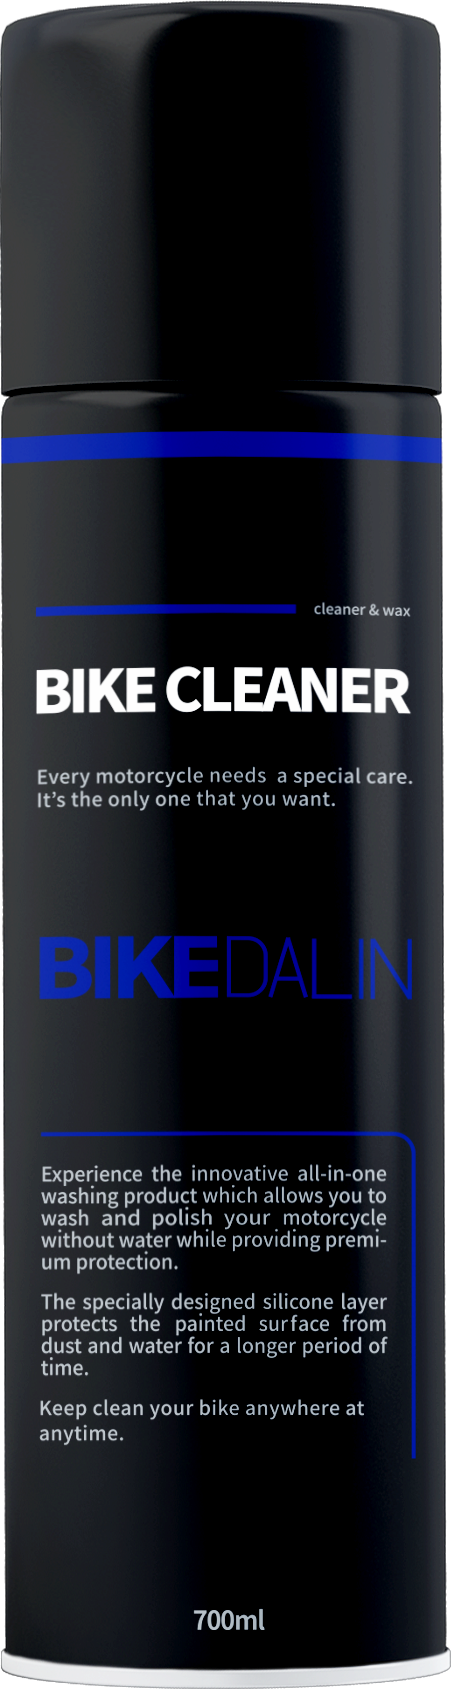 bike cleaner